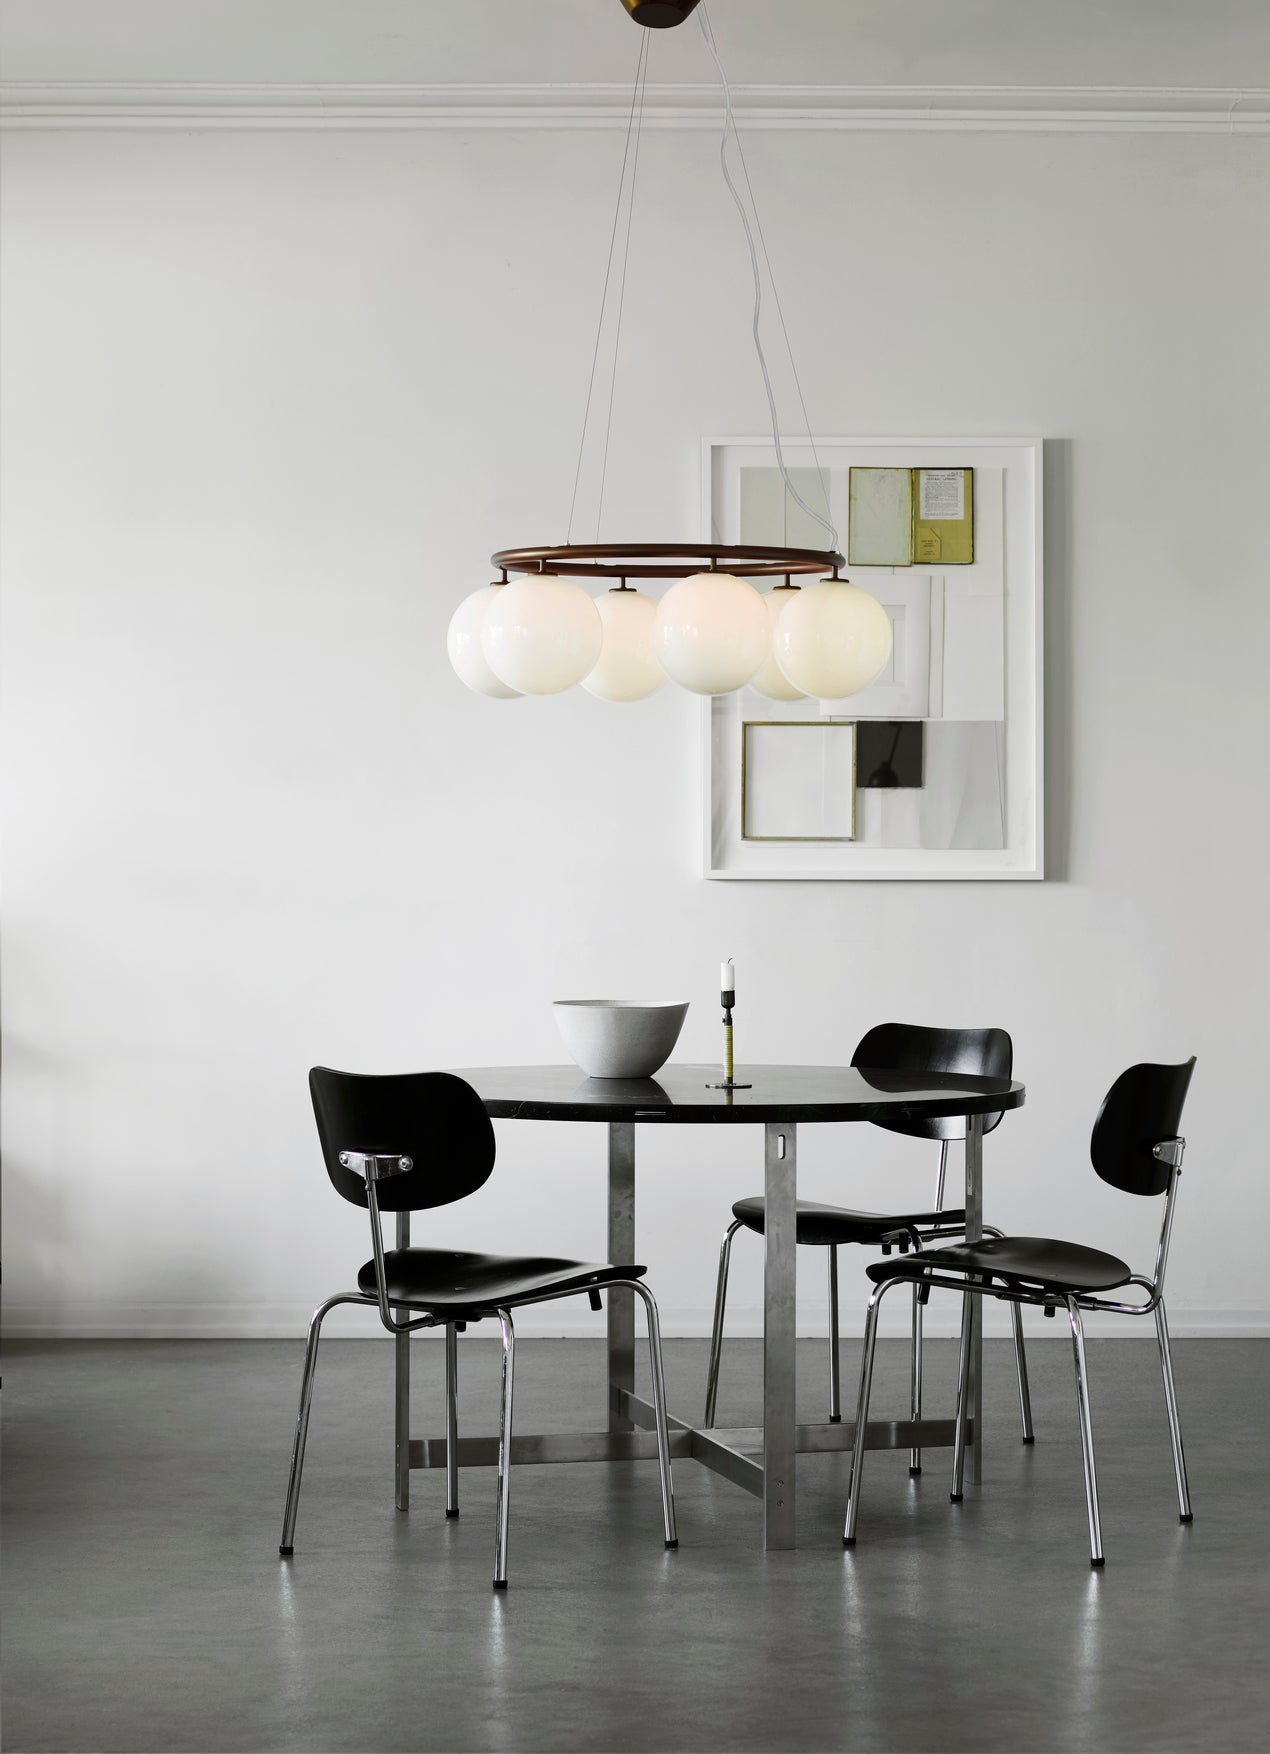 Lysekrone bestående af seks runde skærme i opalglas samt bruneret krone, i spisestuemiljø over spisebord